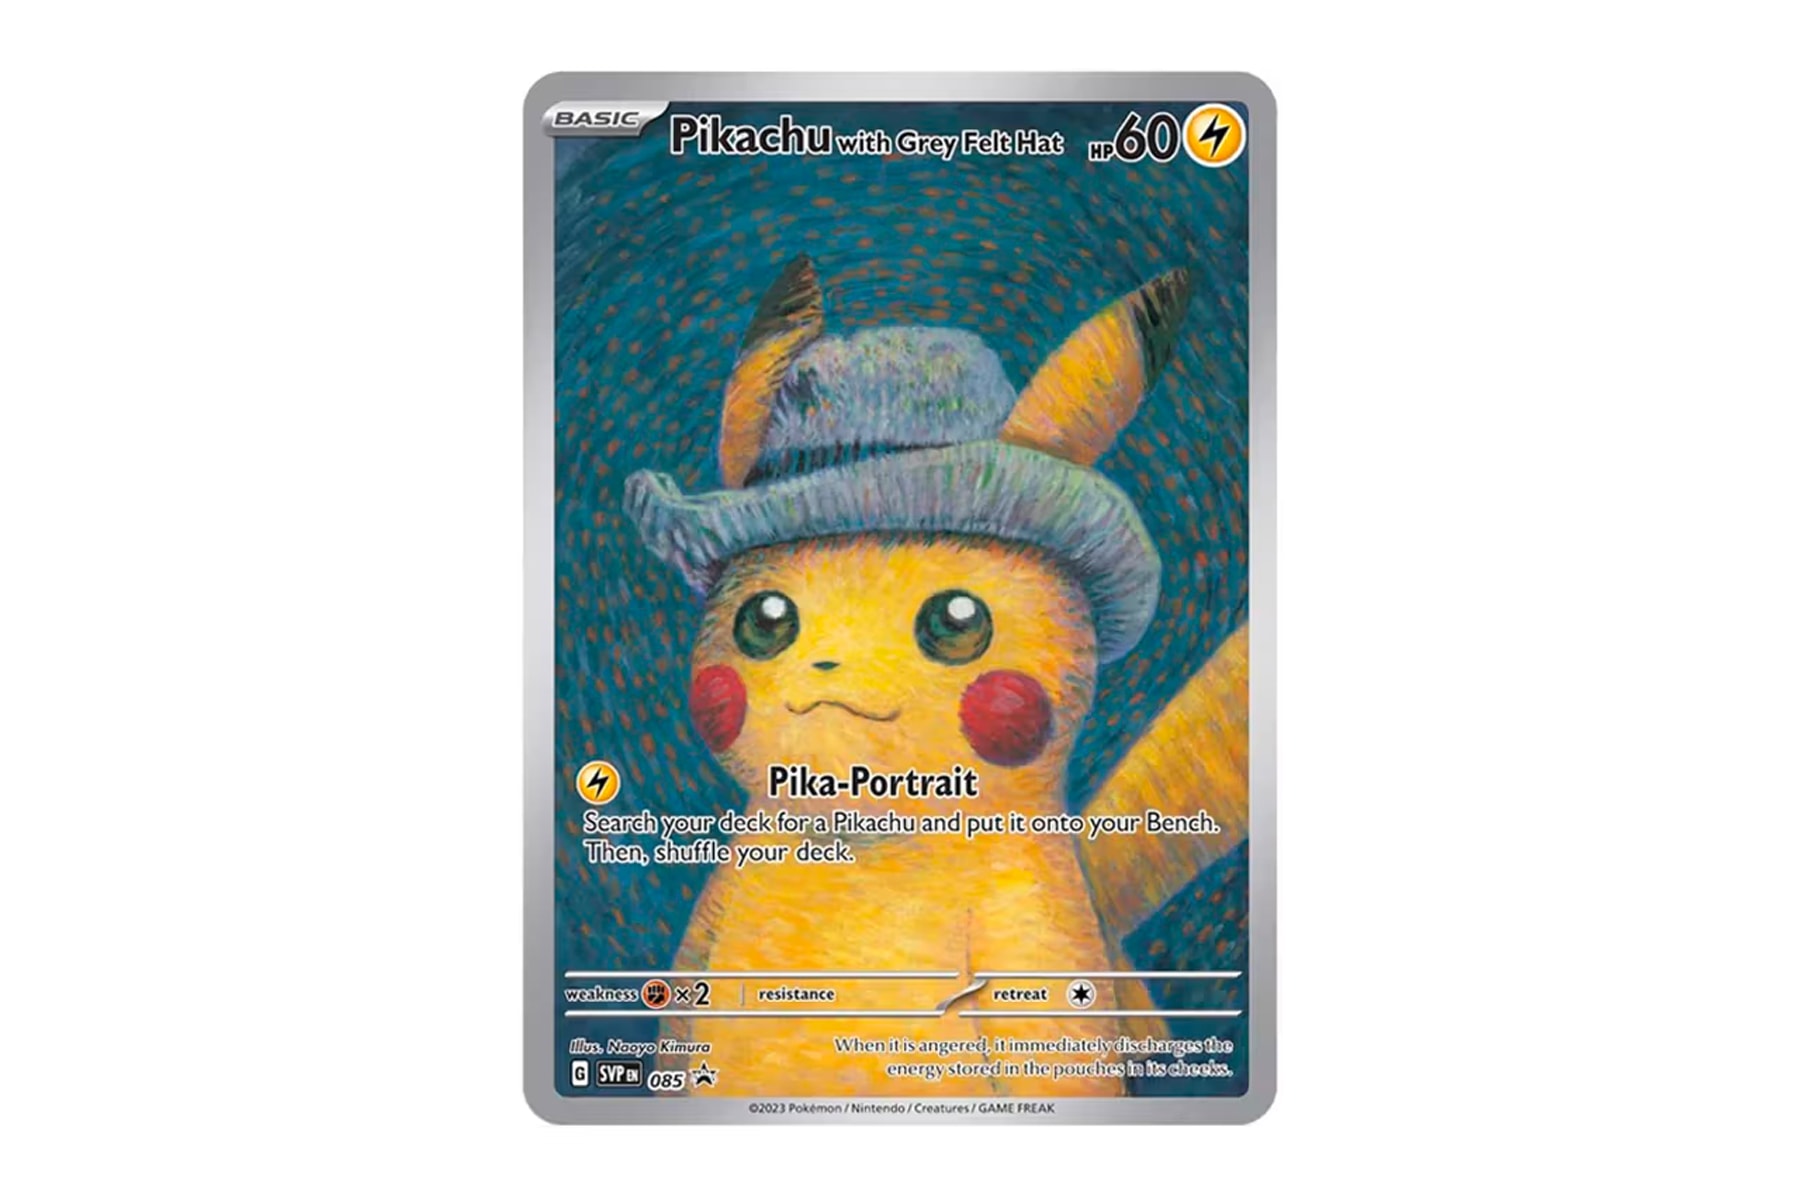 オランダ・ゴッホ美術館がピカチュウのプロモカードを再発行との噂 Van Gogh Museum Reissues Pikachu Pokémon Card Amsterdam